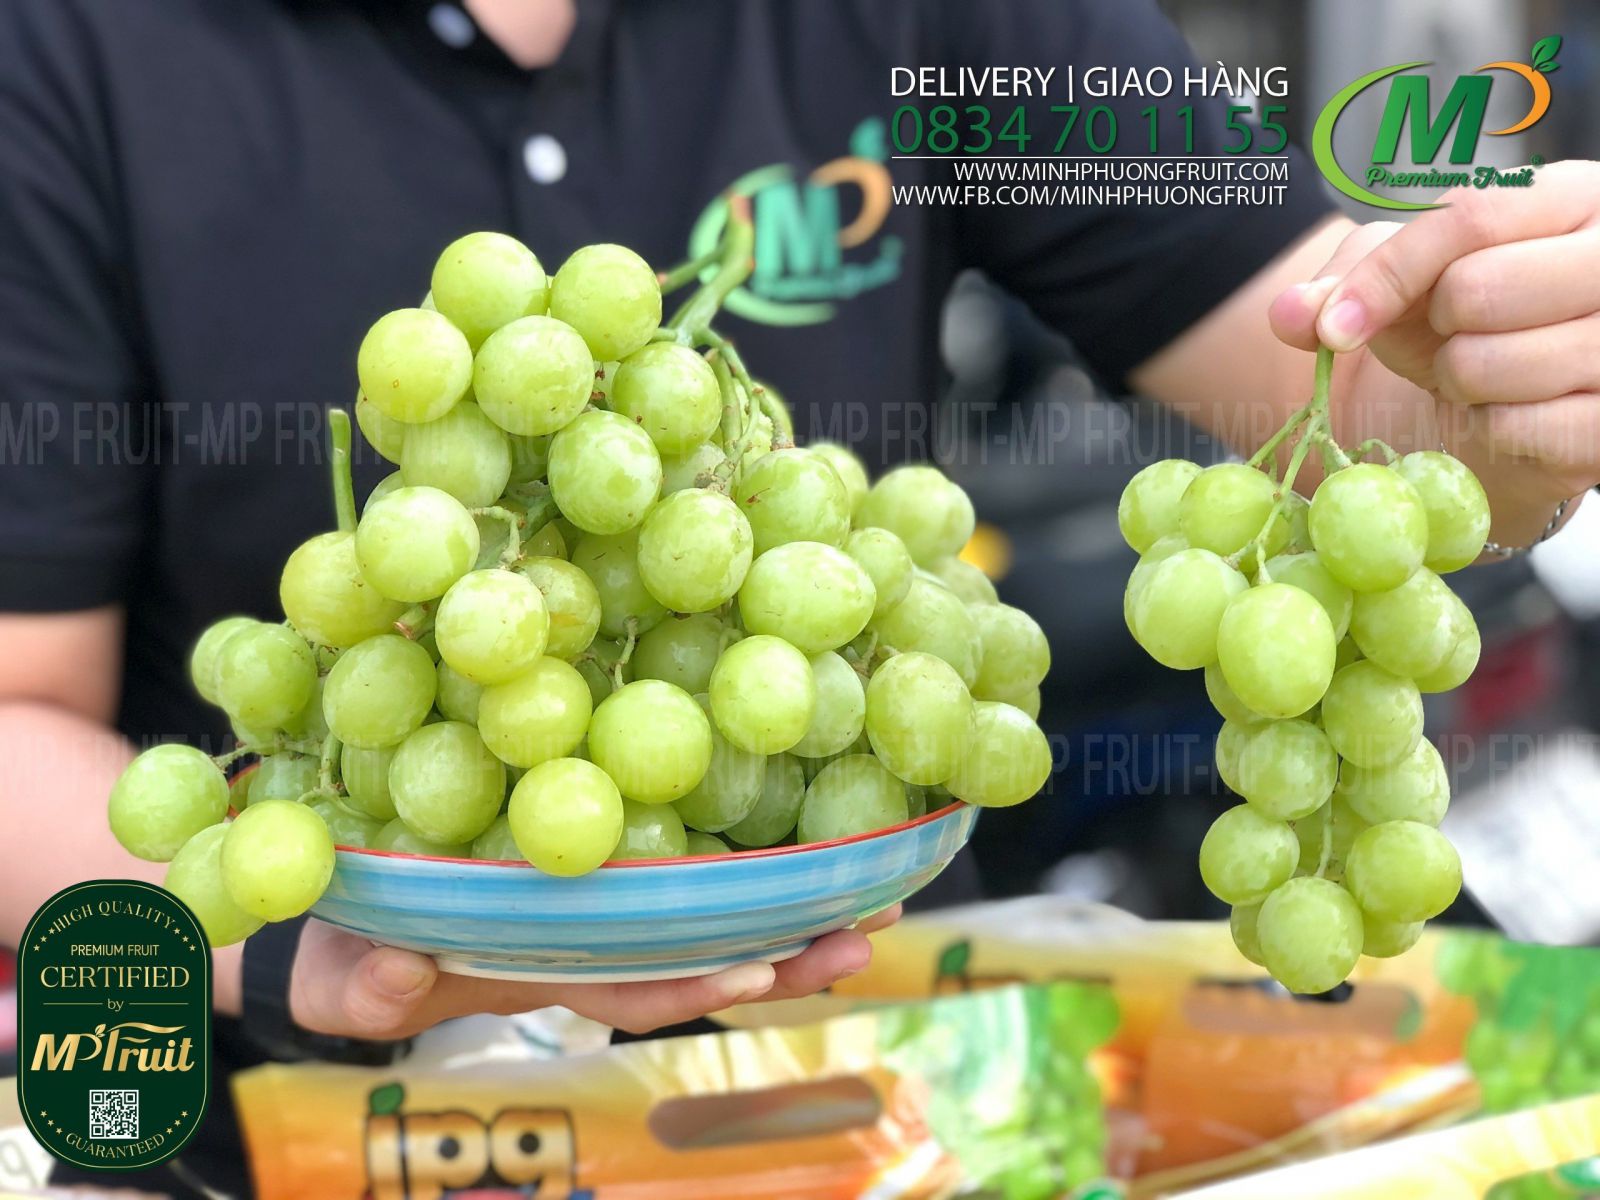 Nho Xanh AutumnCrisp® IPG Mỹ tại MP Fruits